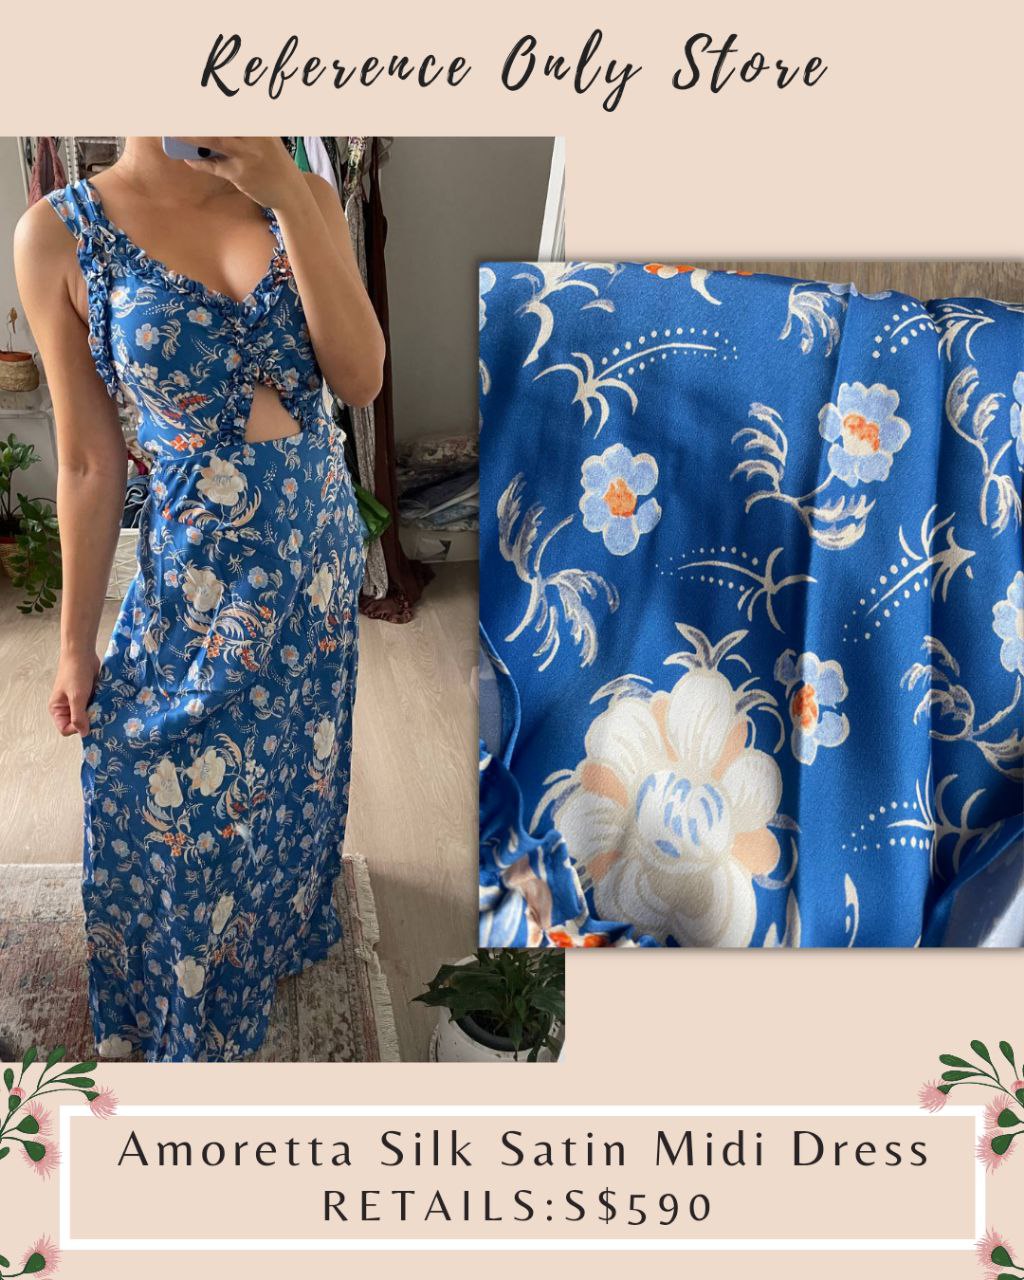 Back! DN Amoretta Silk Satin Midi Dress